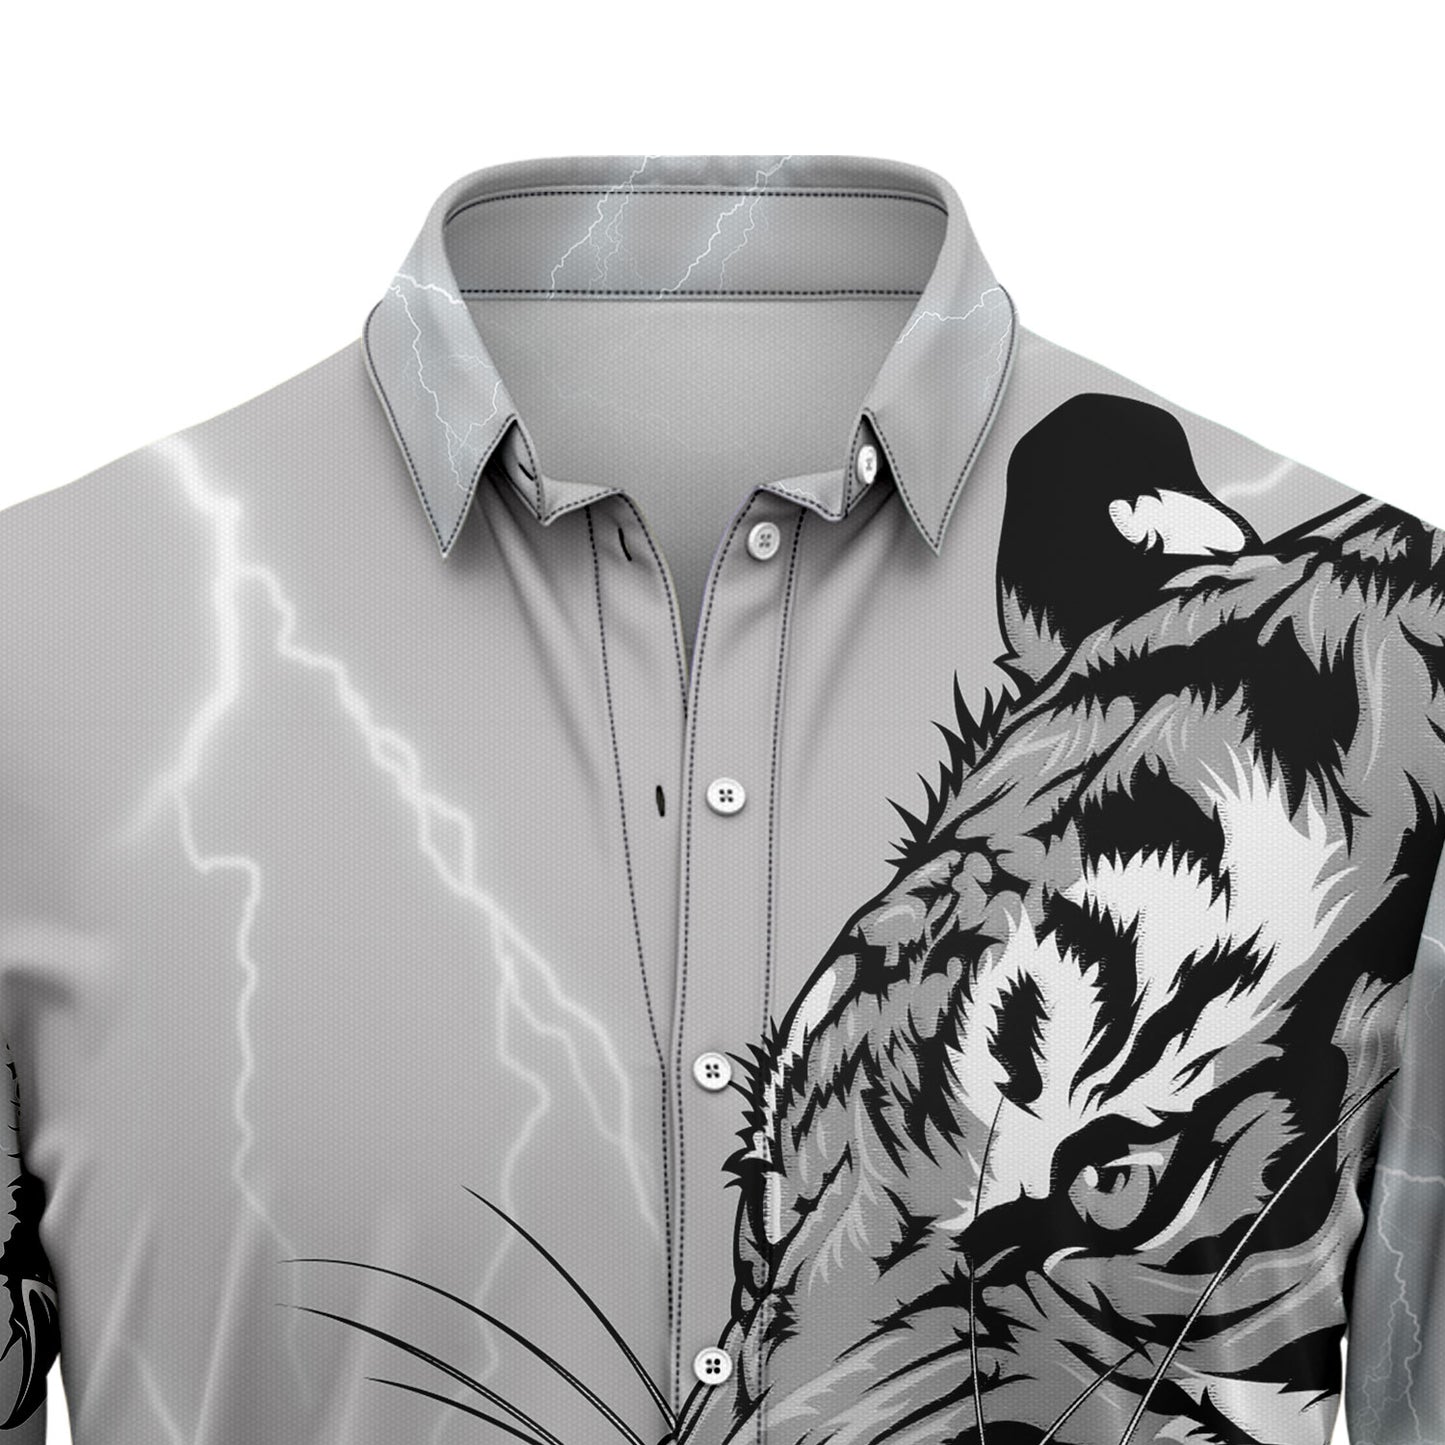 Awesome Tiger G5811 Hawaiian Shirt